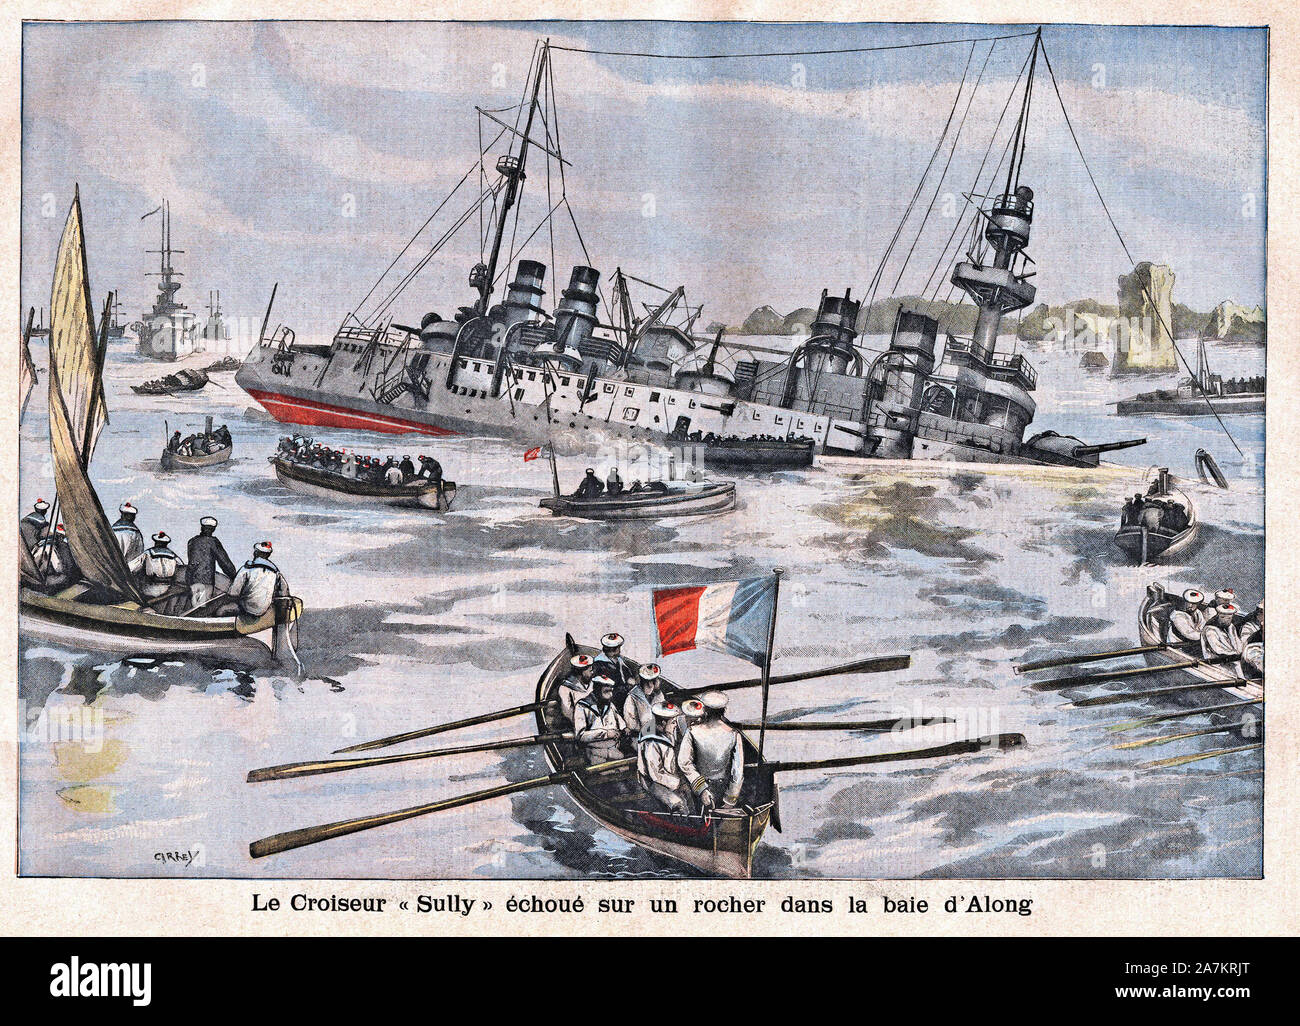 Le croiseur Sully commande par le capitaine Guiberteau, s'échoue sur un rocher dans la baie d'Ha Long (Ha-Long, Halong, Baie d'Along). Gravure in 'Le Stock Photo